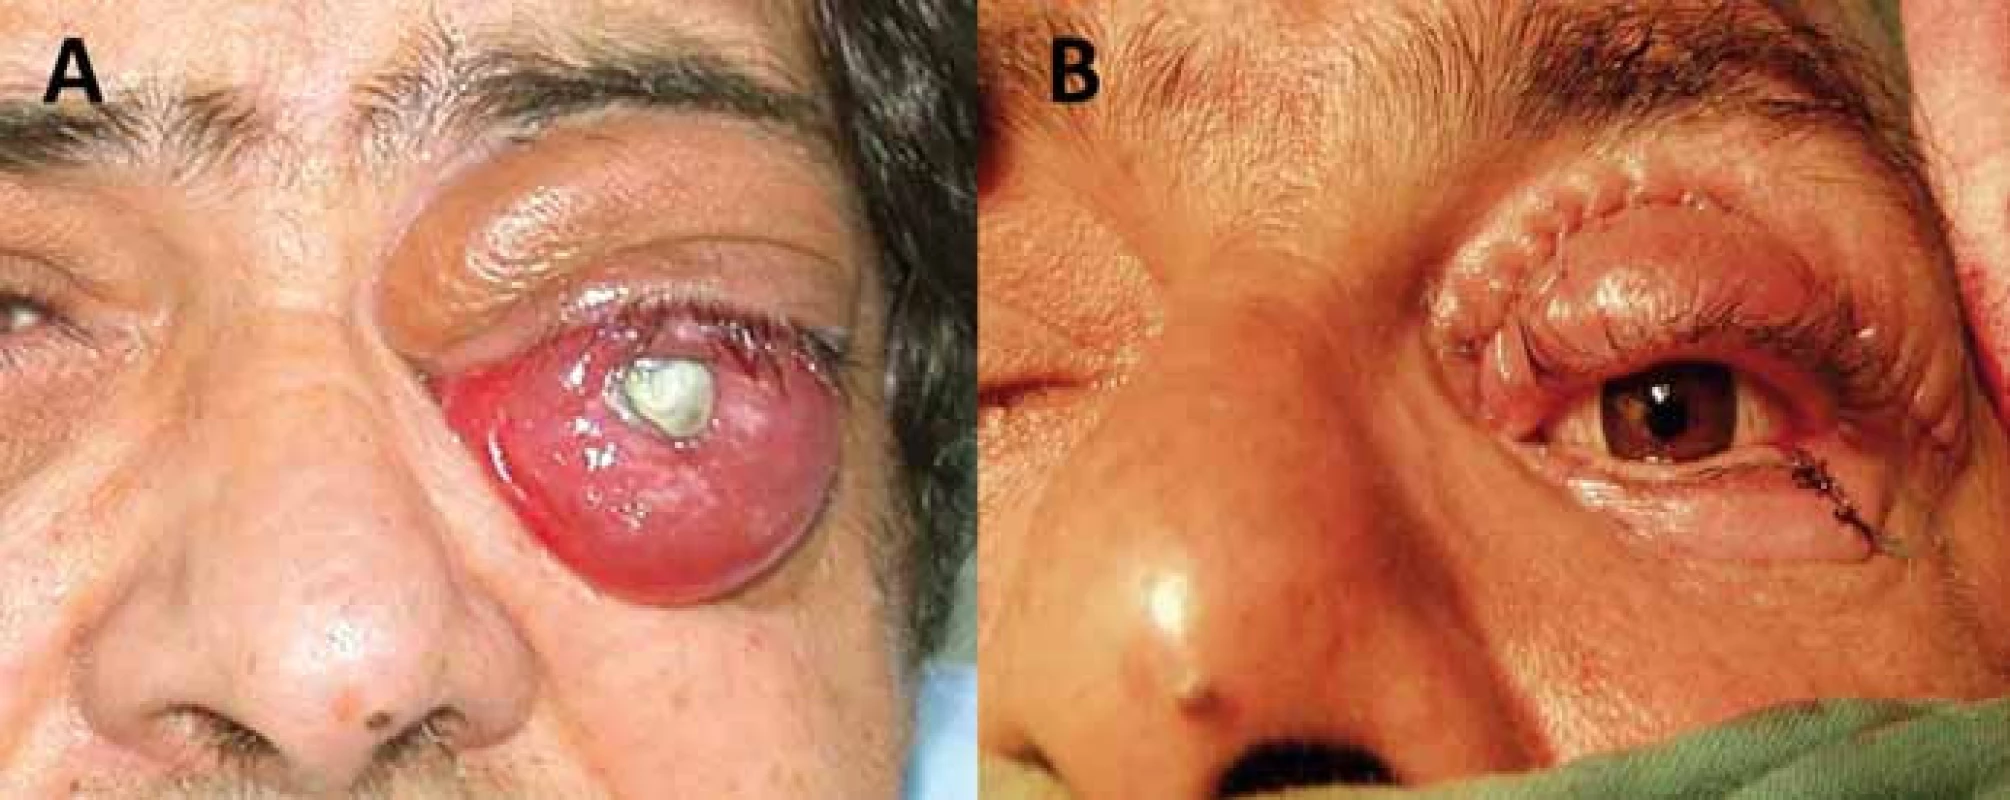 Enukleace bulbu v pozdní fázi meningeomu pochvy optického nervu pro bolestivý exoftalmus slepého oka (A) s následnou plastikou víček a implantací protézy (B).